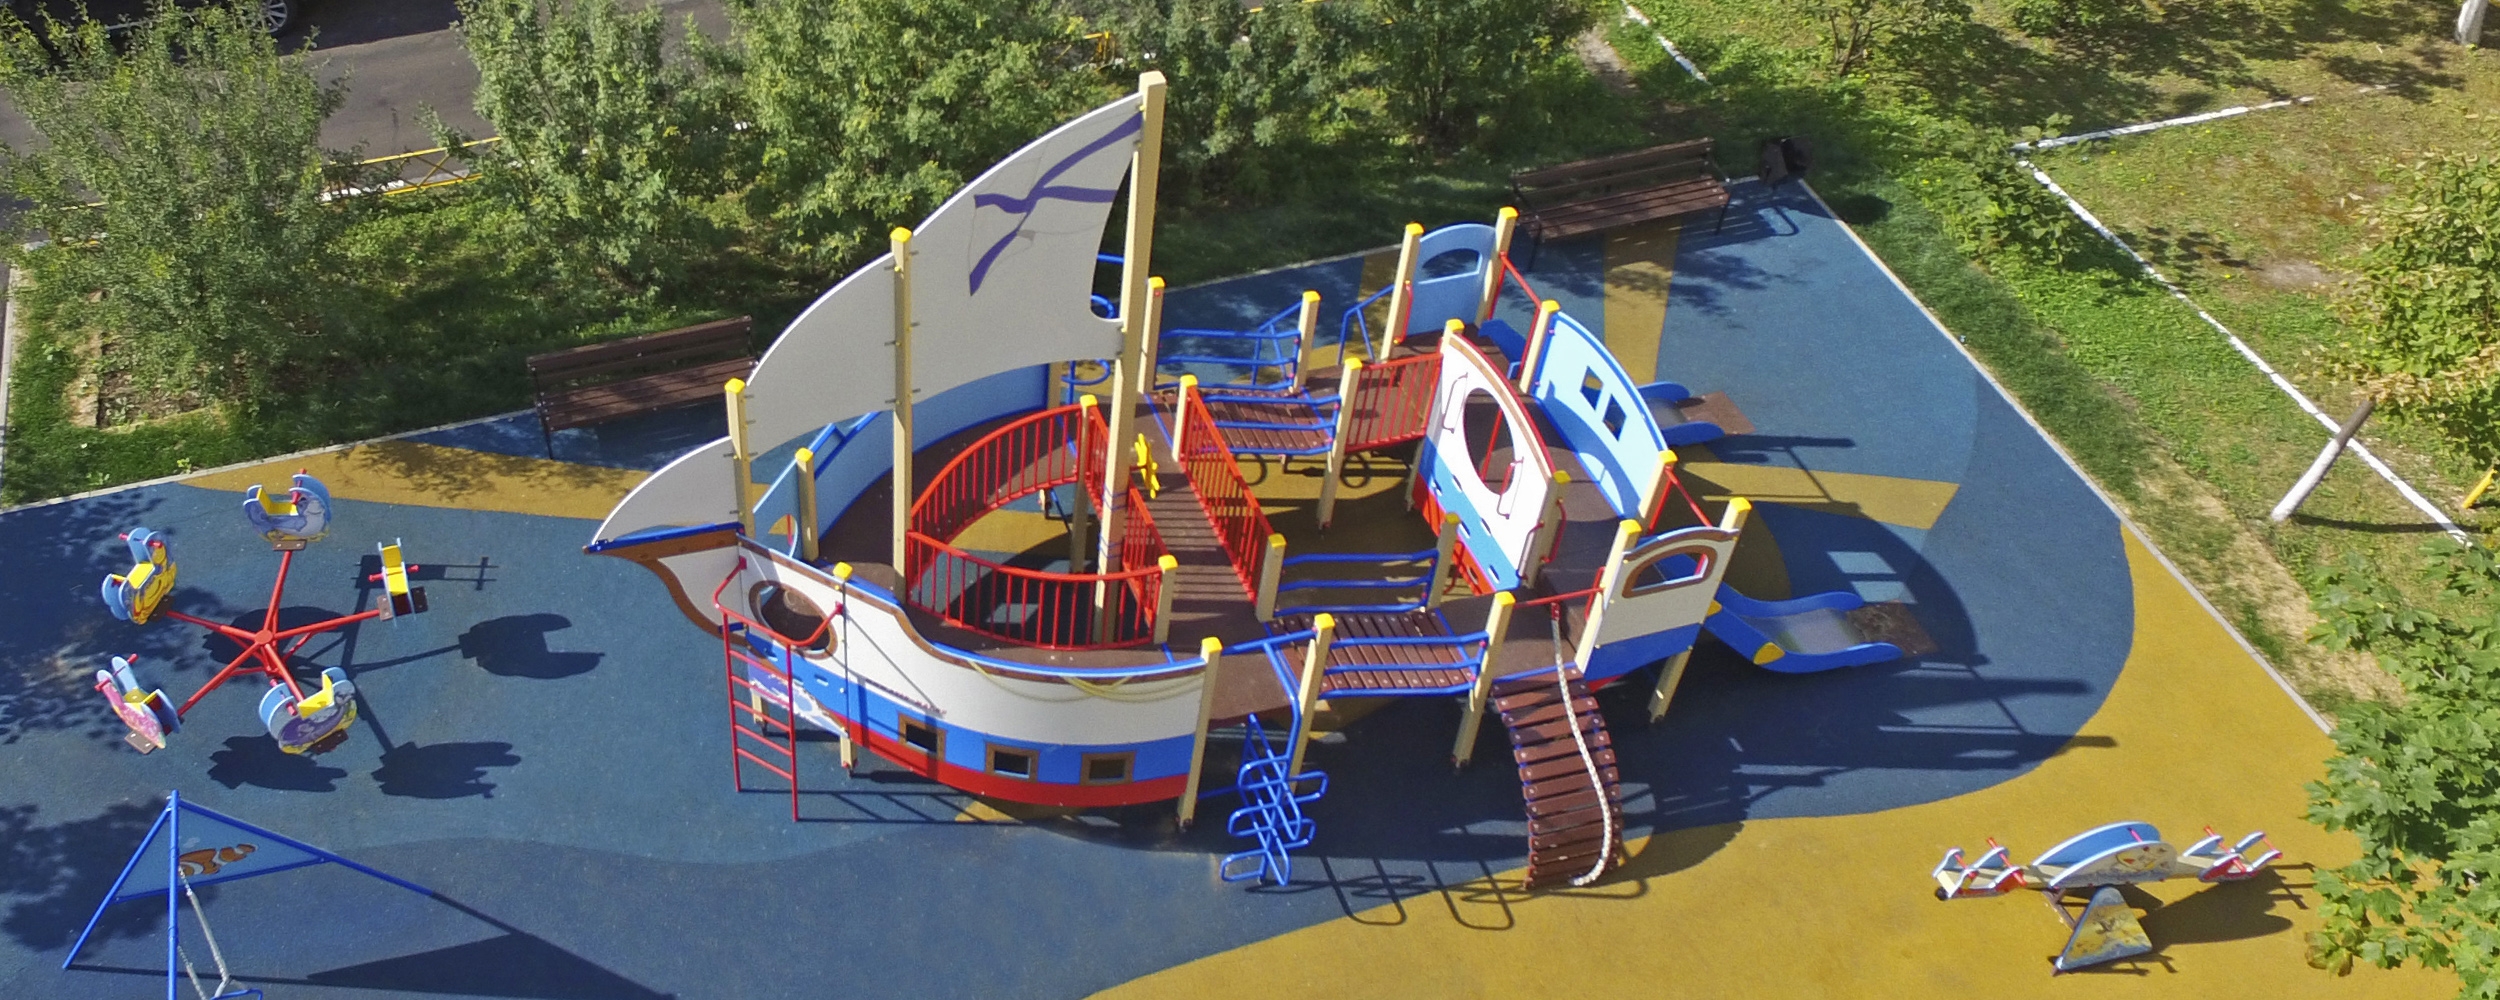 Детские площадки в виде корабликов, машинок и самолетов — транспортная  тематика